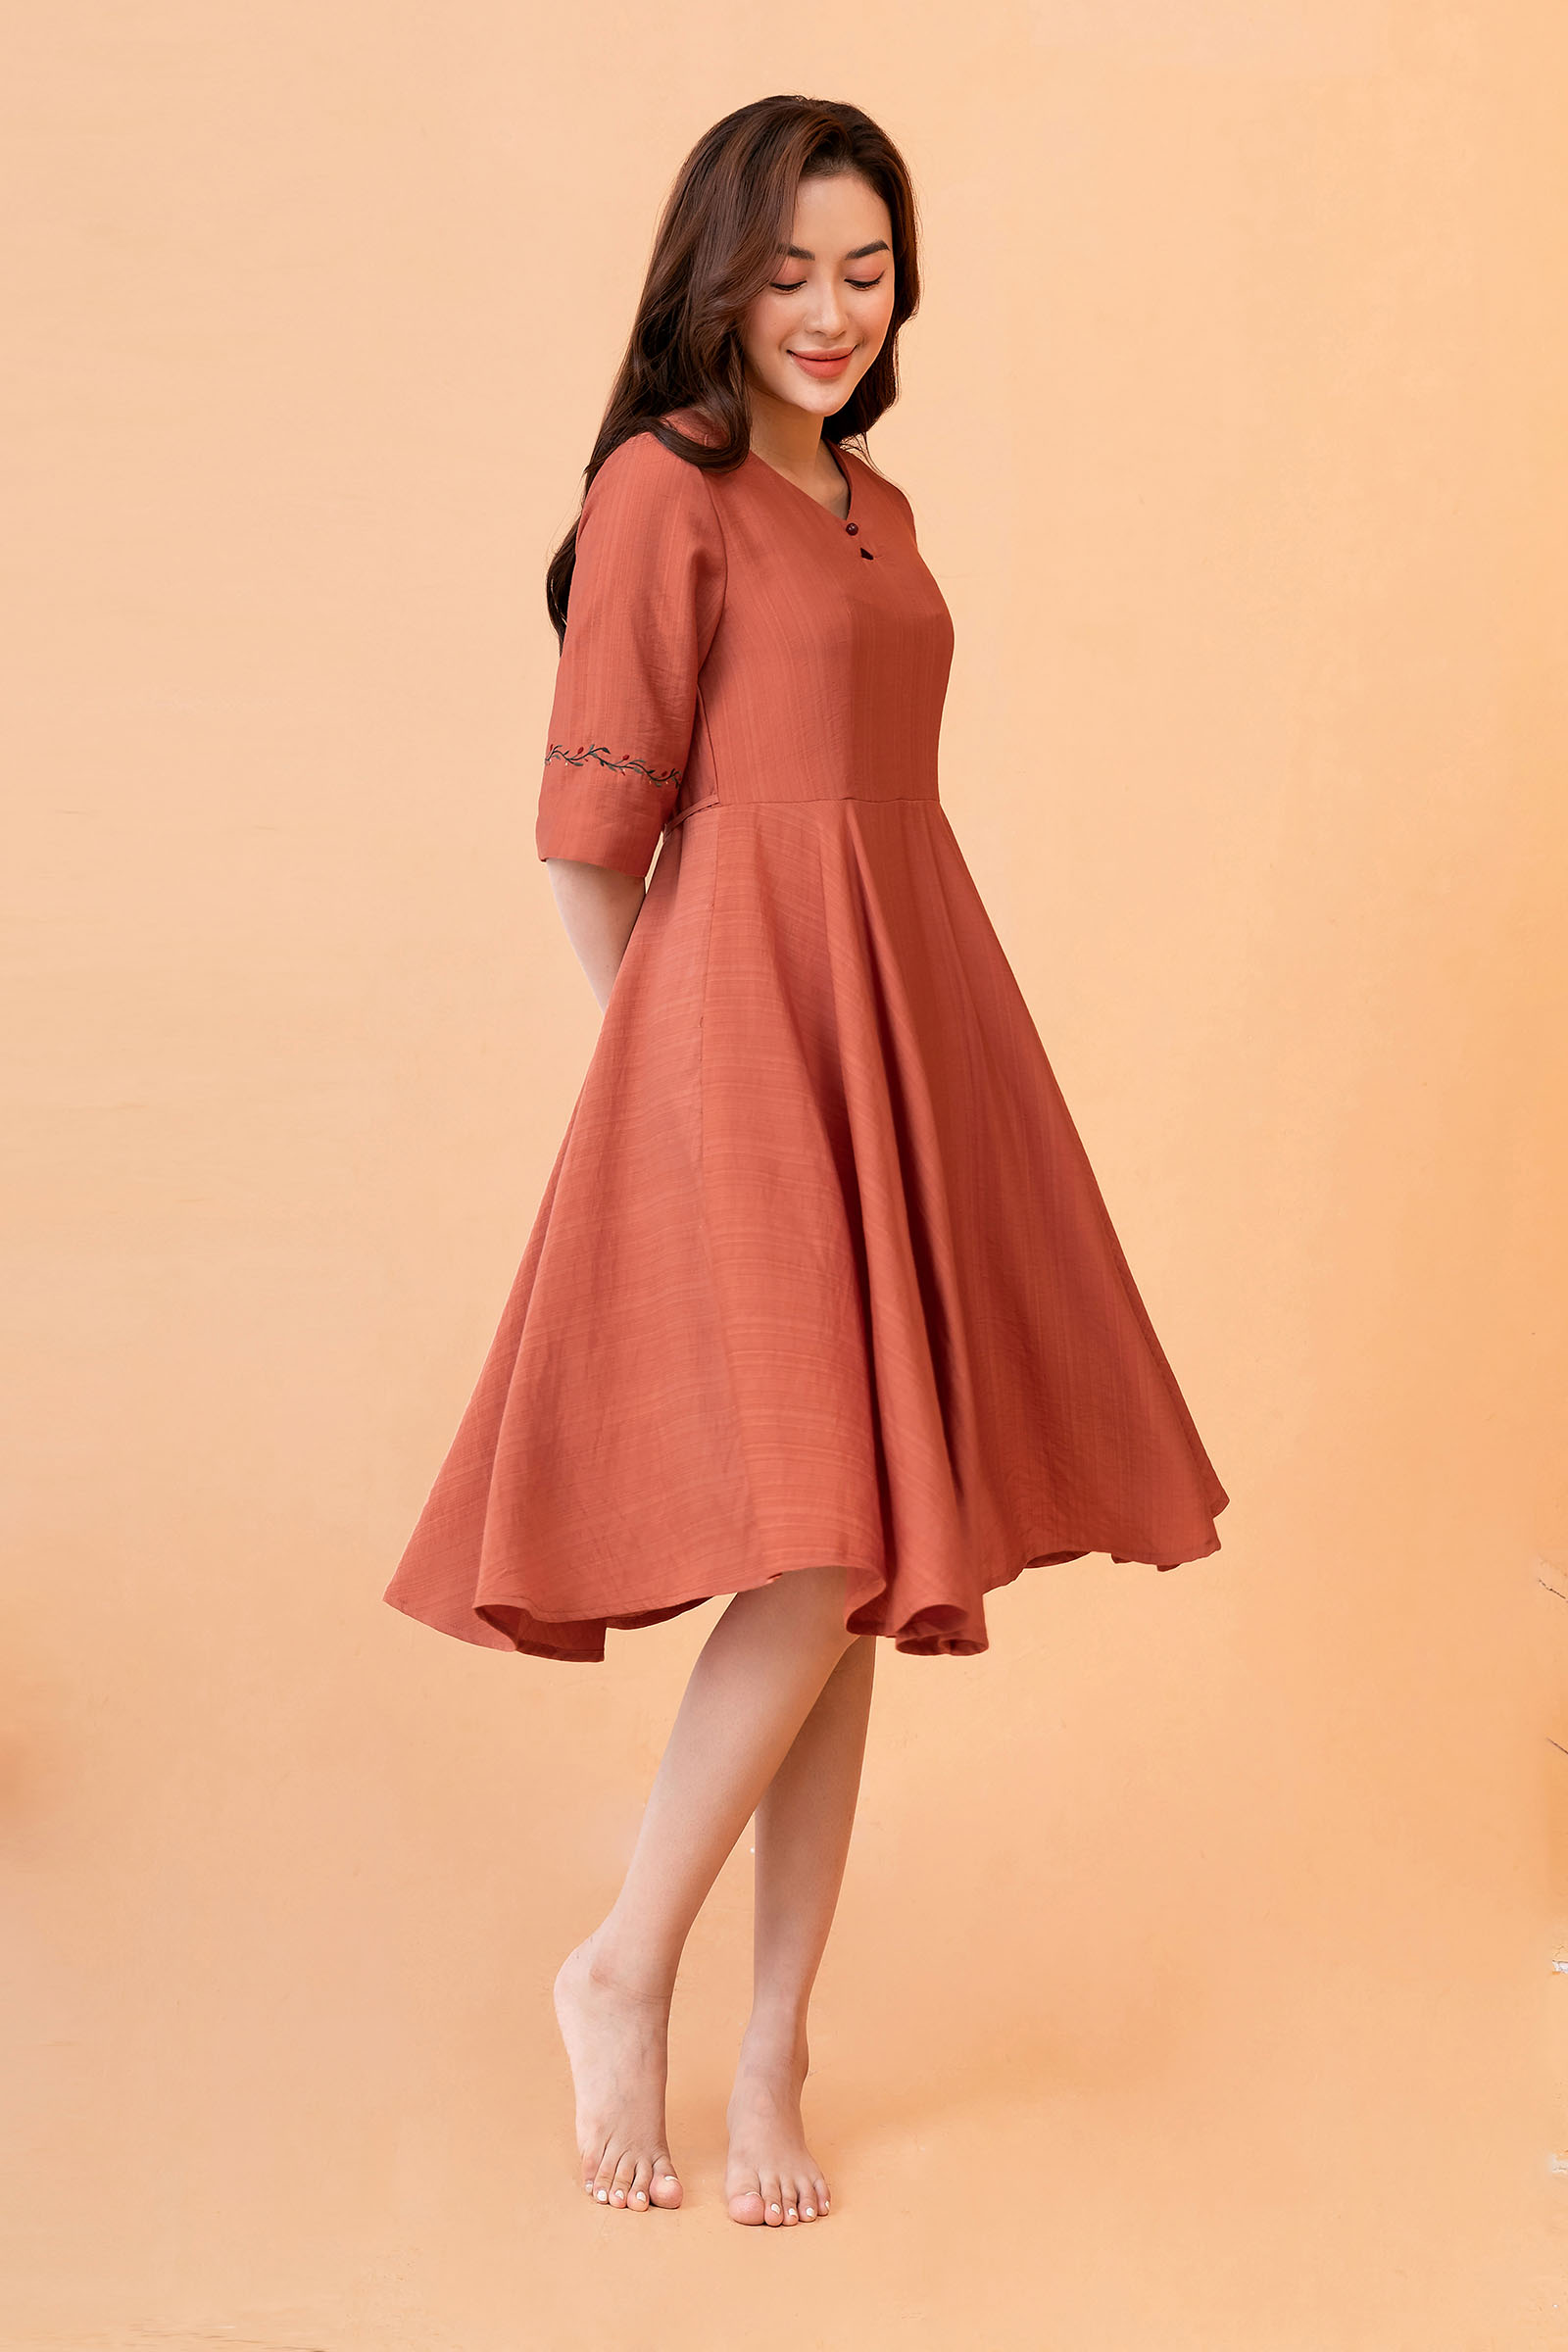 Sét đồ nữ áo sơ mi lụa phối chân váy dài kaki thiết kế thanh lịch thích hợp  mặc đi làm đi chơi đi làm | Shopee Việt Nam